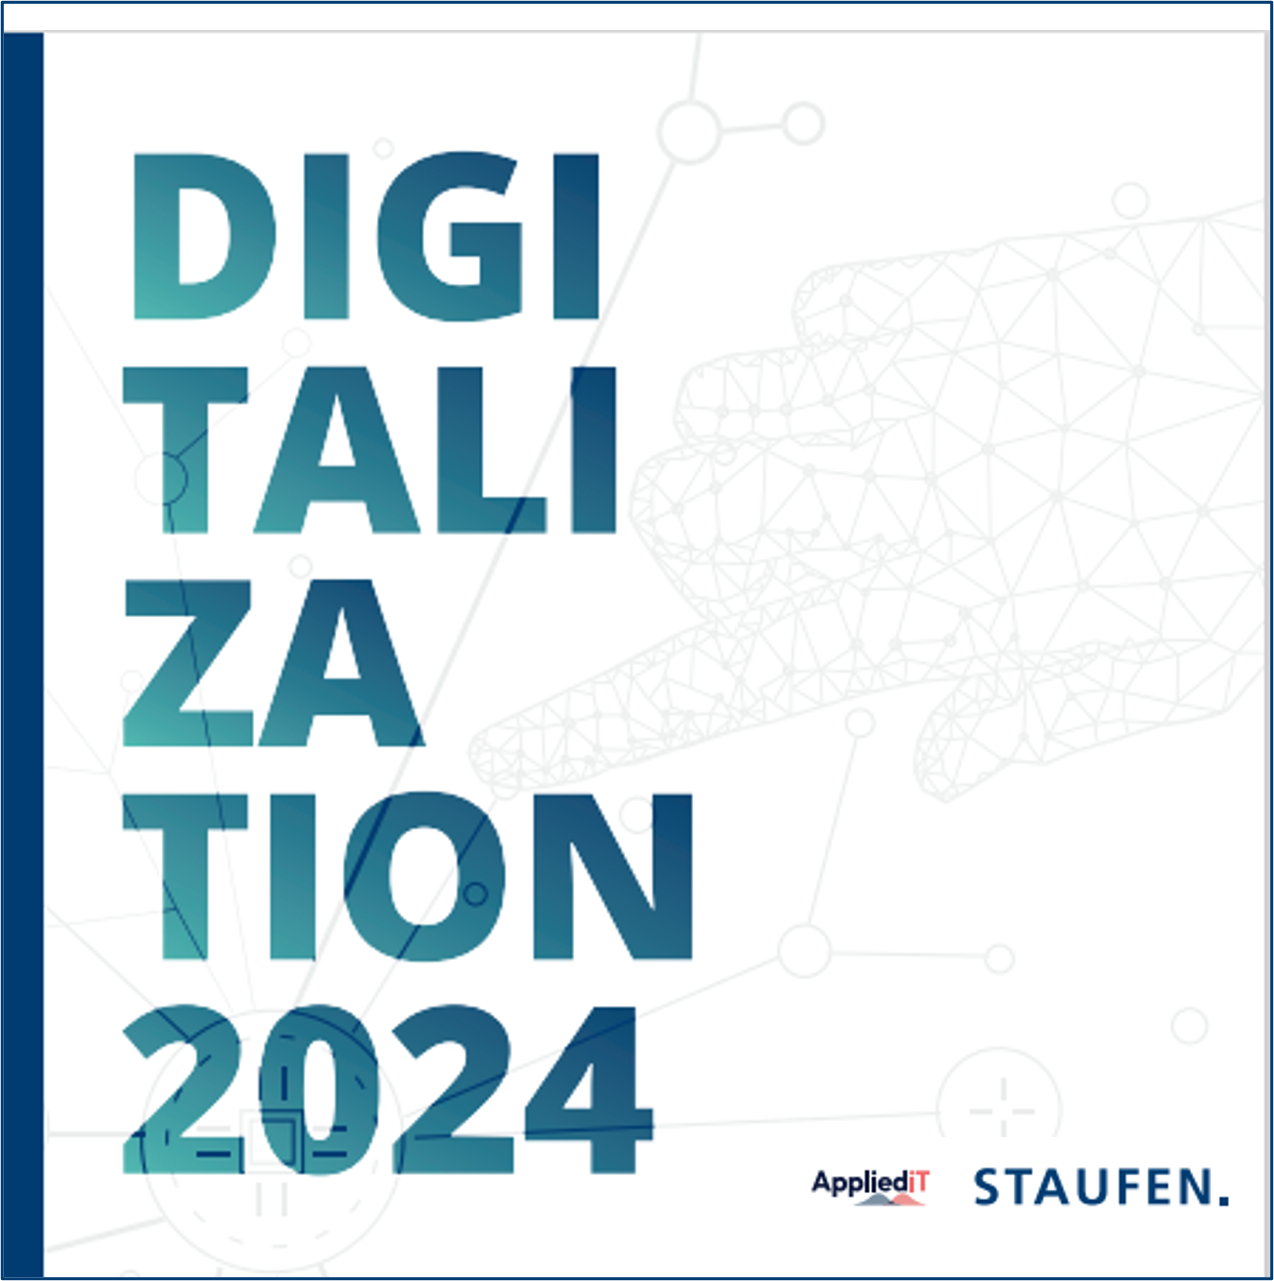 Staufen-Study-digitalization-2024-2